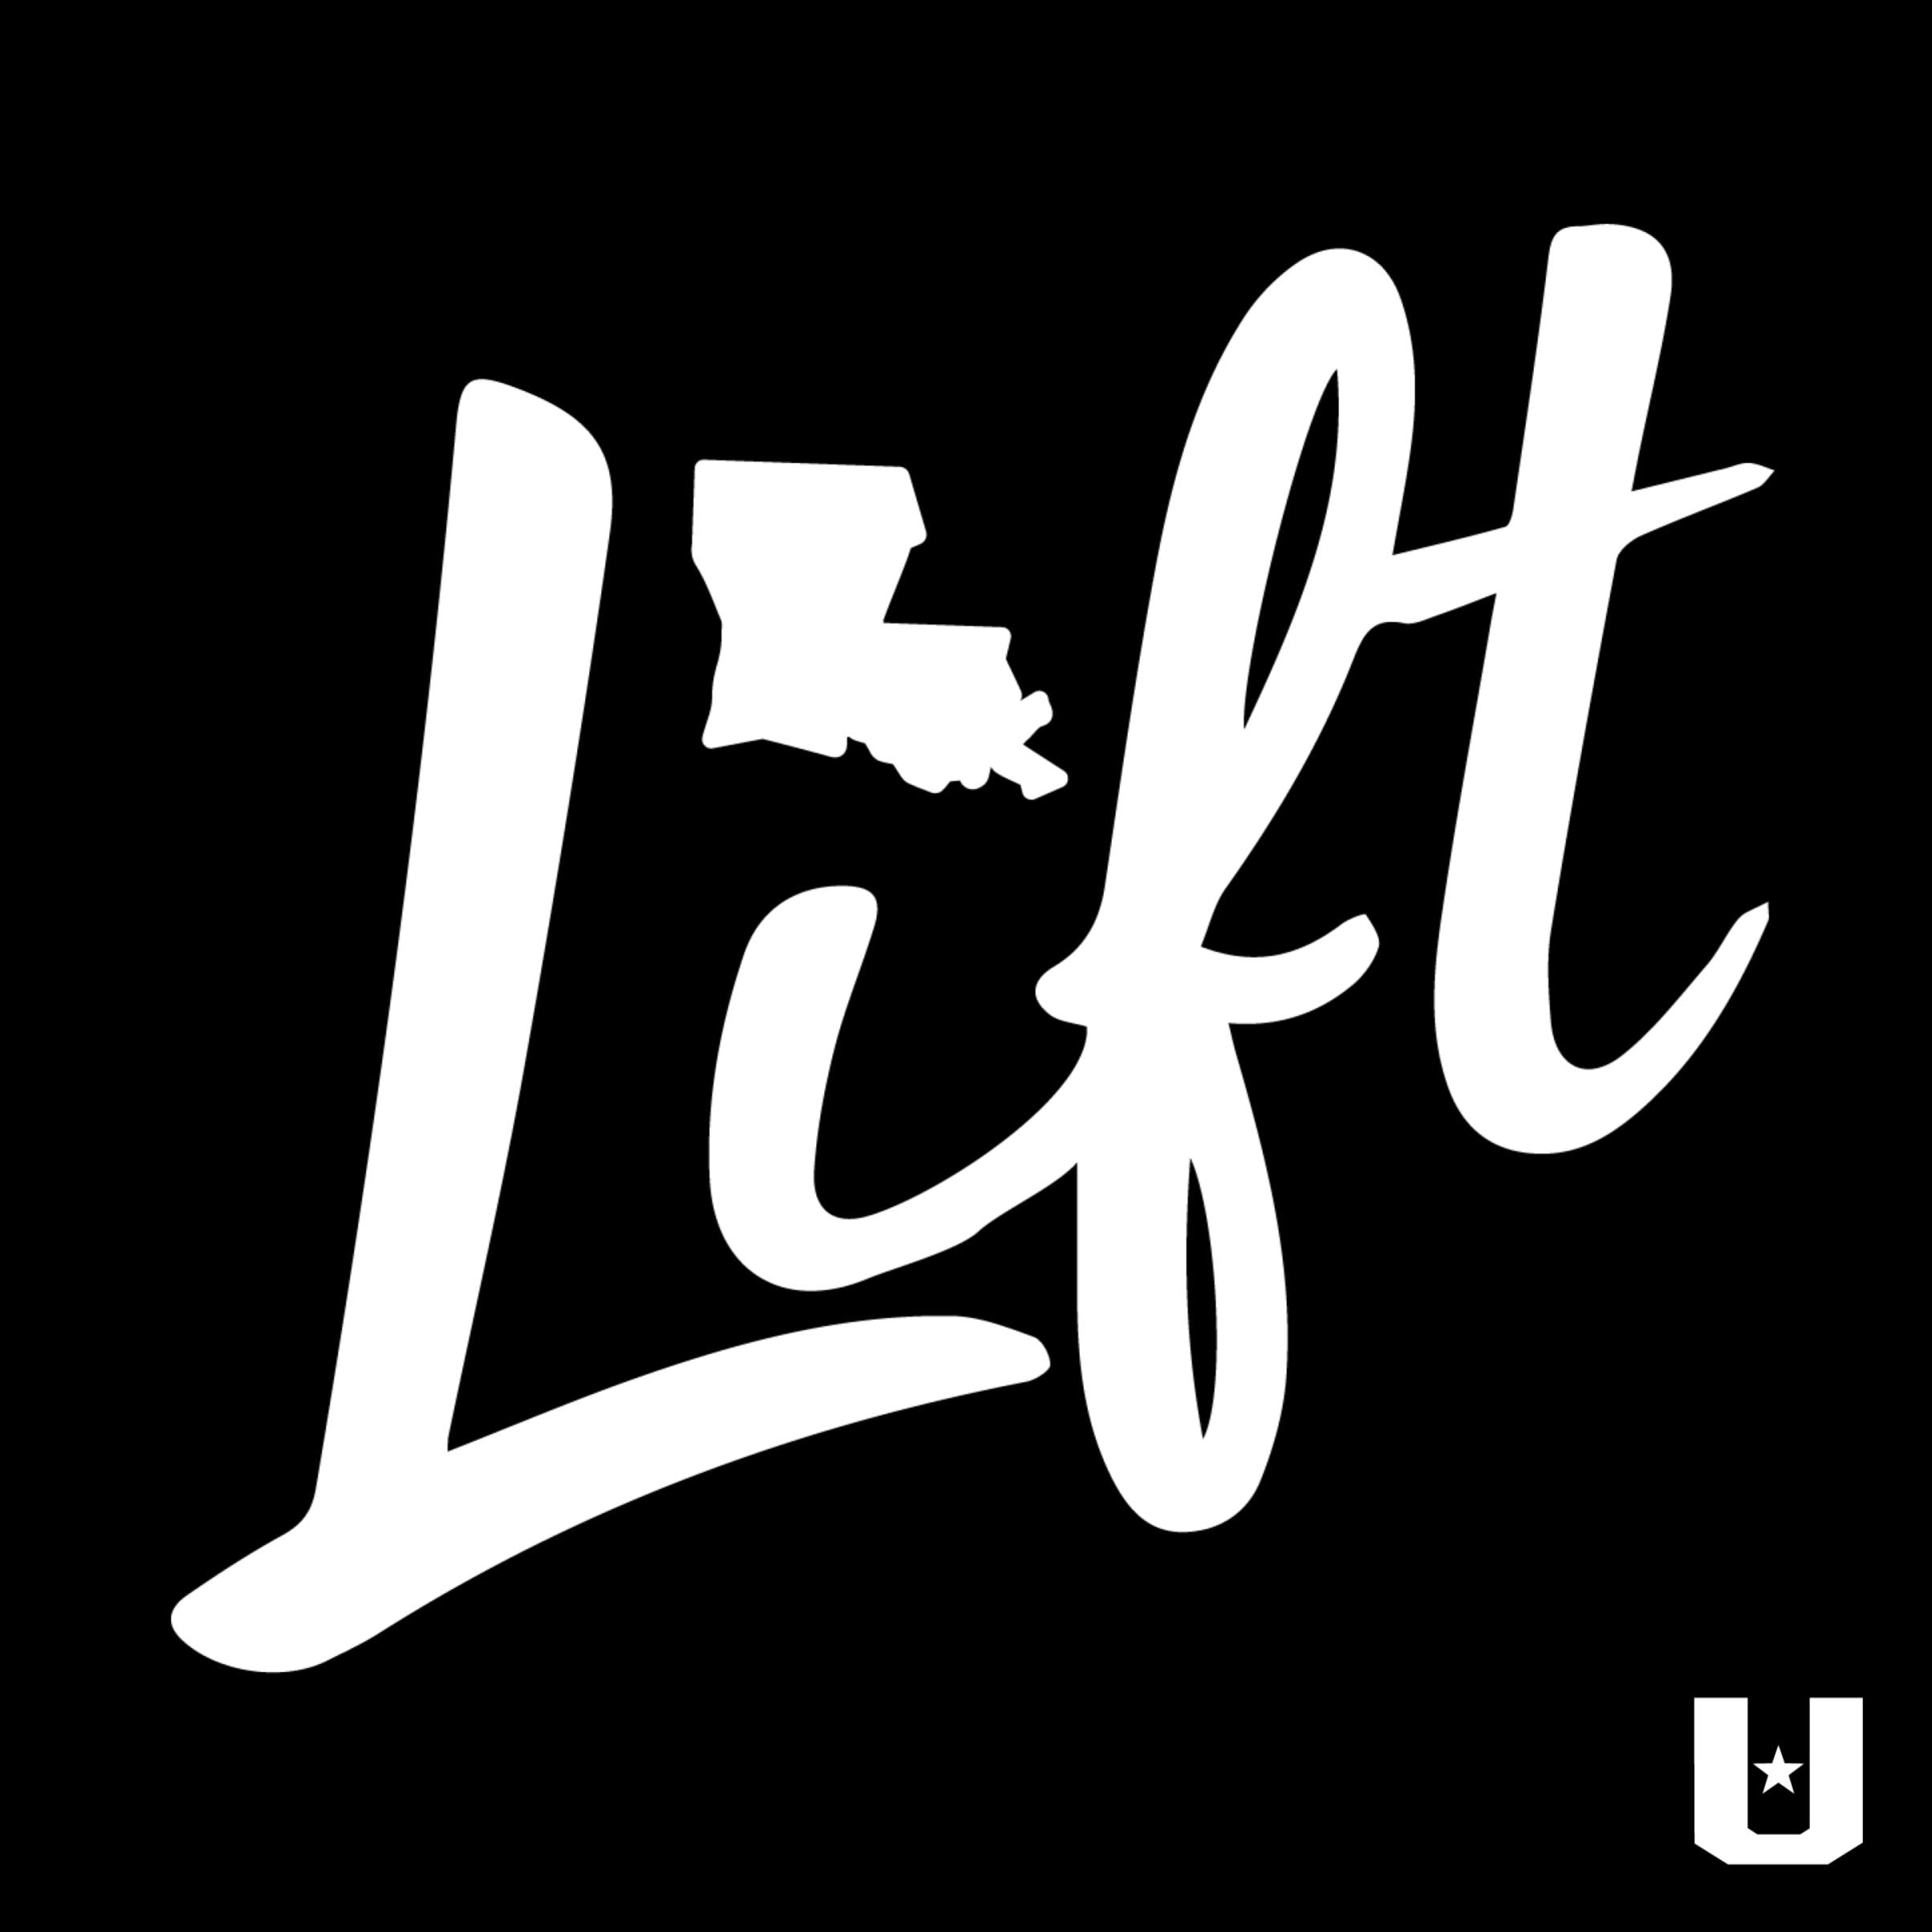 Louisiana Lift